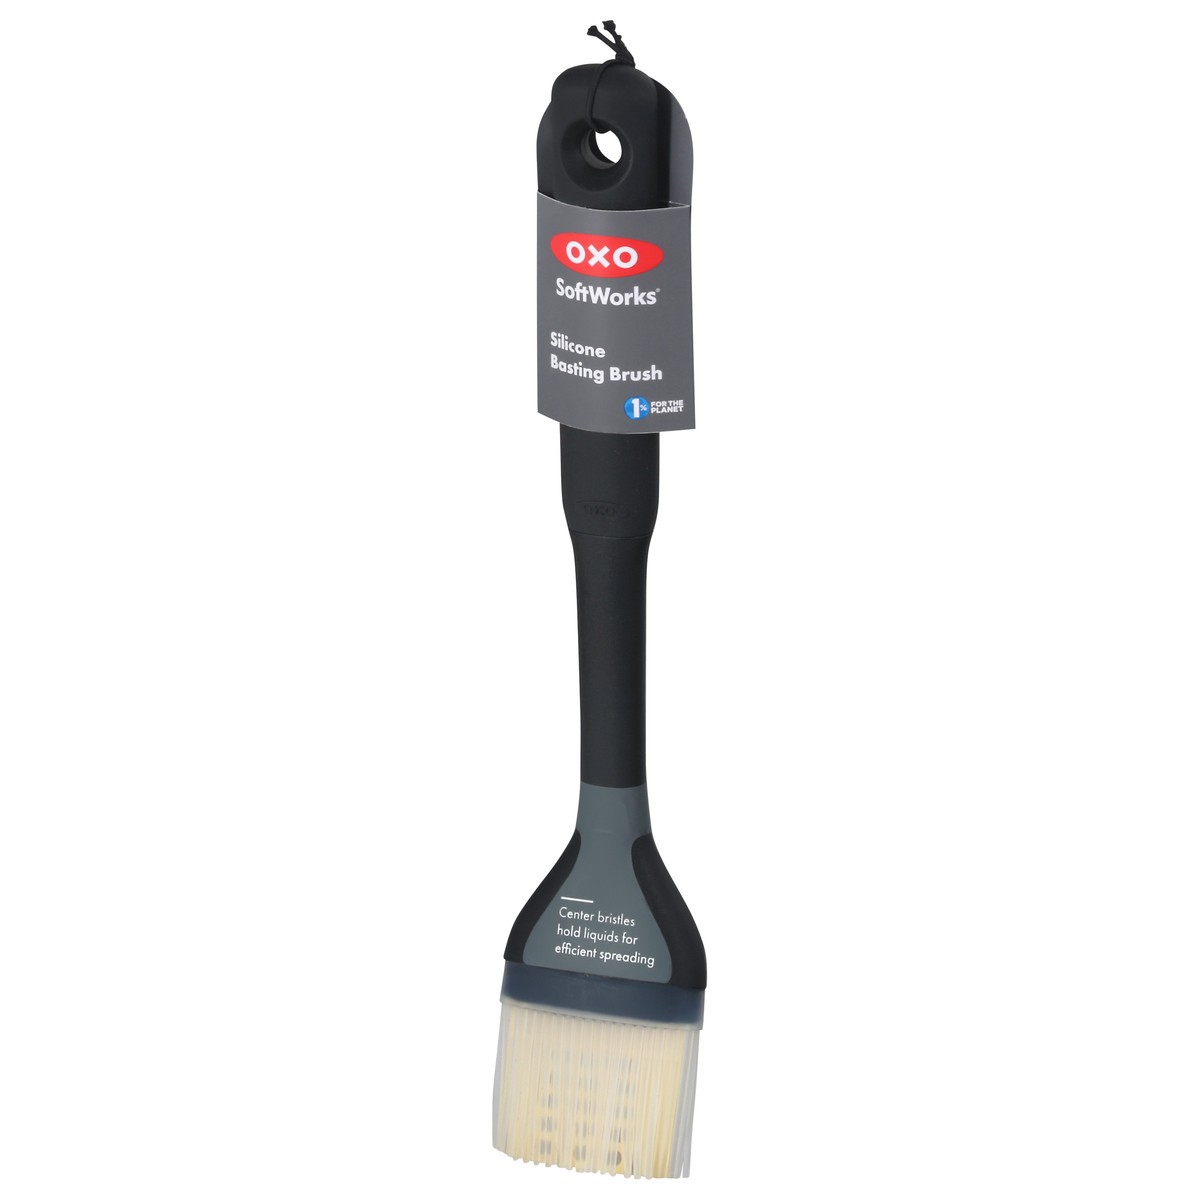 Buy OXO Good Grips Large Silicone Basting Brush, 1 EA, Black